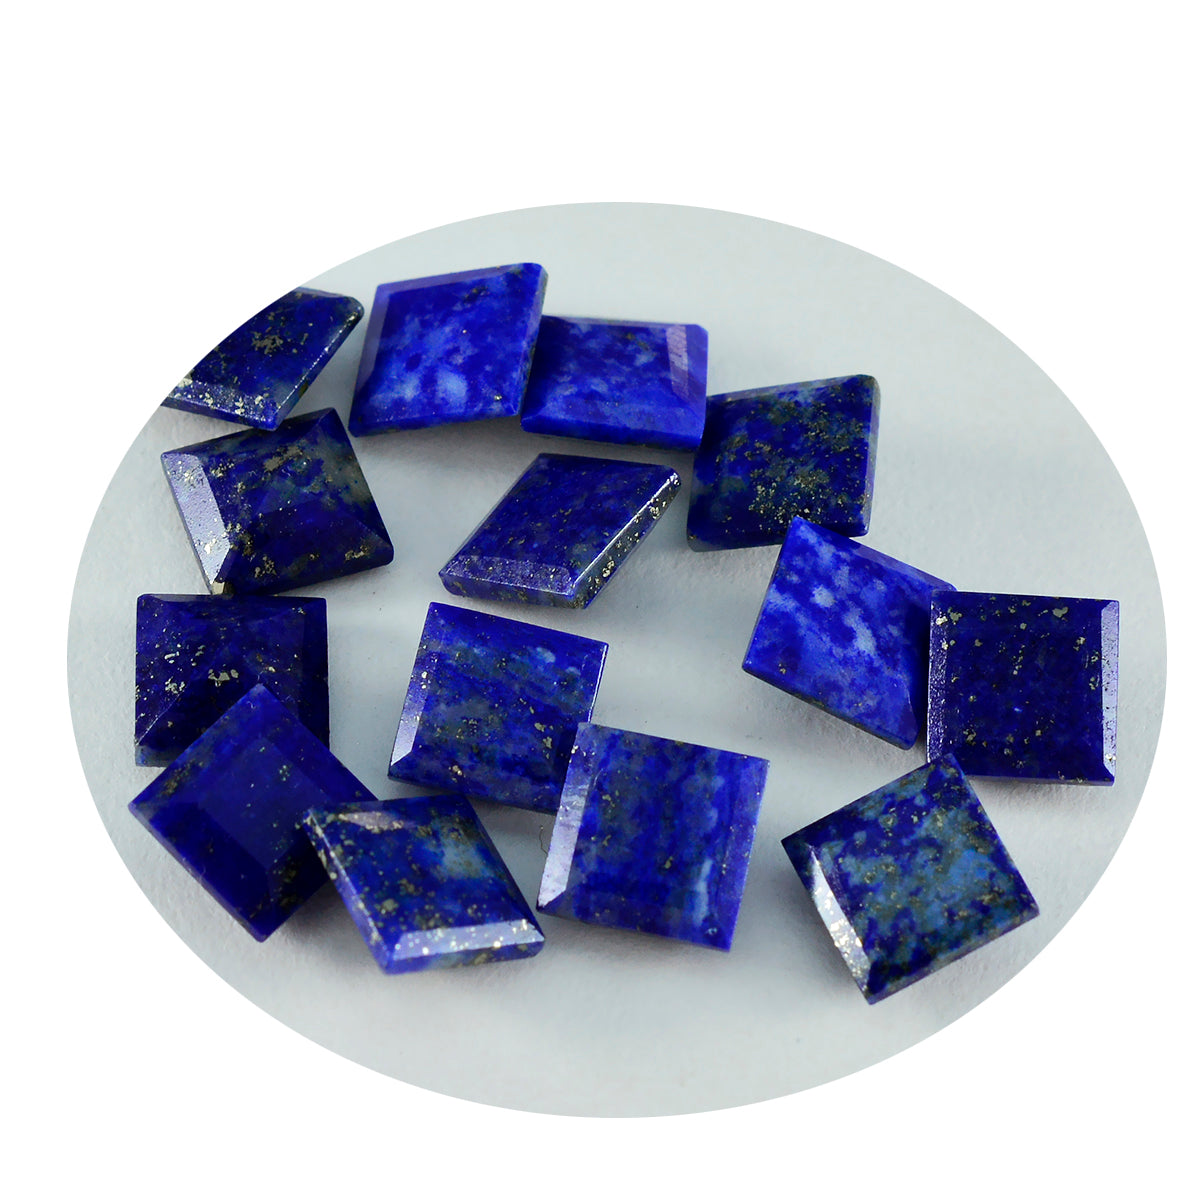 Riyogems 1 Stück natürlicher blauer Lapislazuli, facettiert, 8 x 8 mm, quadratische Form, hübscher Qualitätsstein